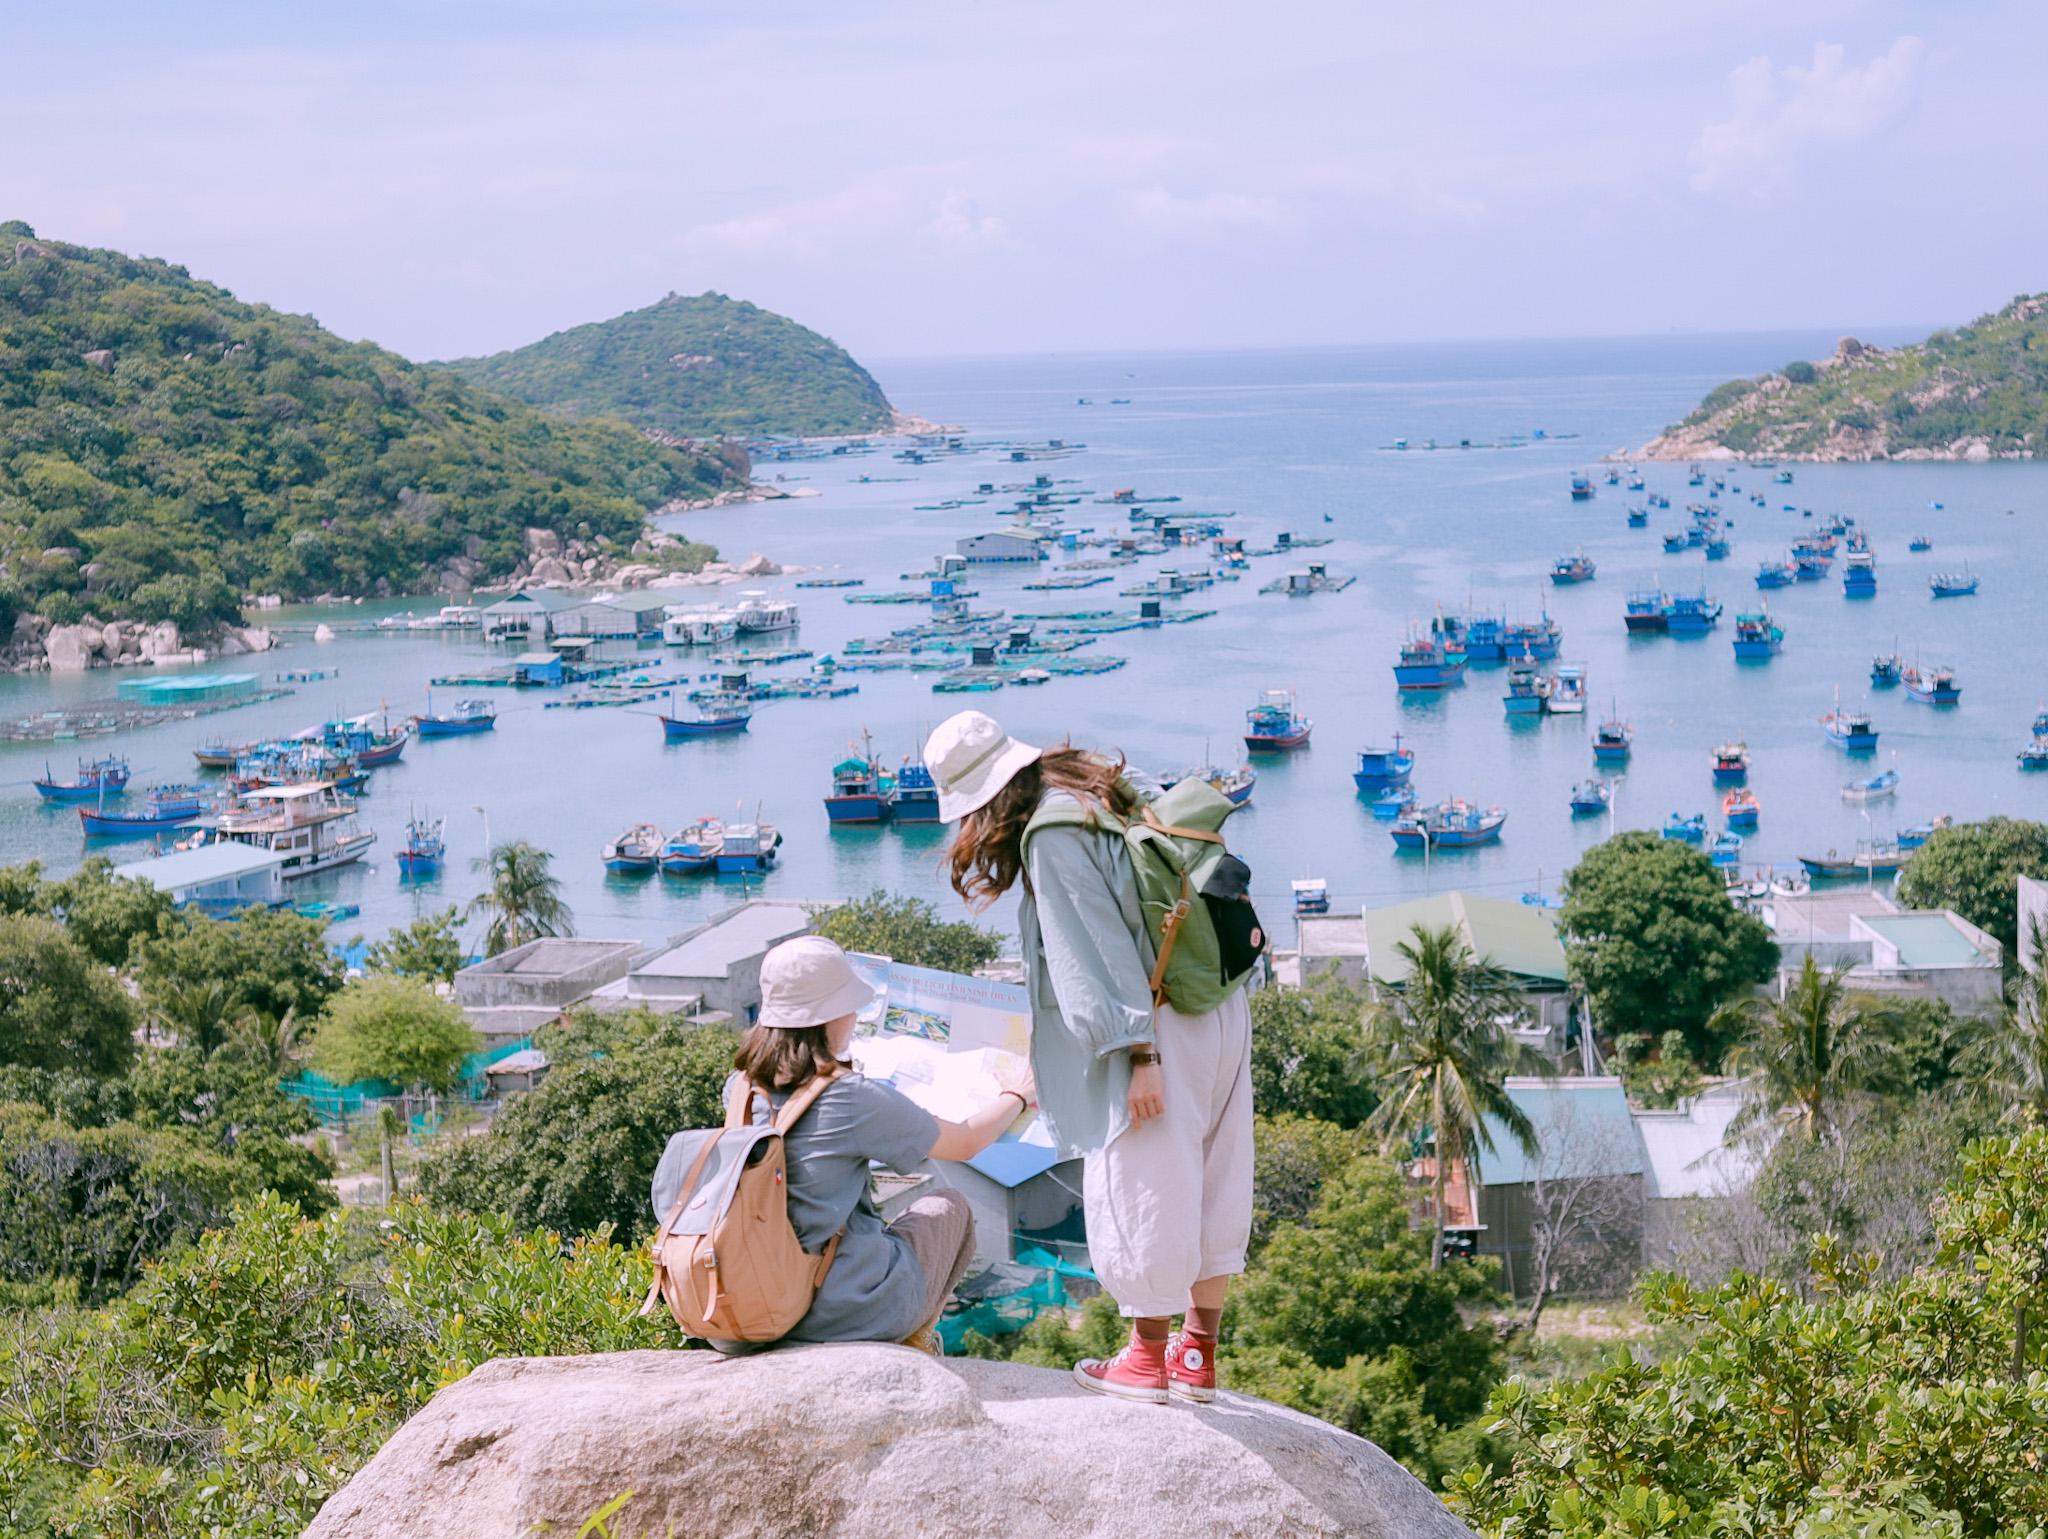 Đến 'Địa Trung Hải' của Việt Nam, ngắm biển xanh cát trắng và làng chài đẹp mê hồn - 5